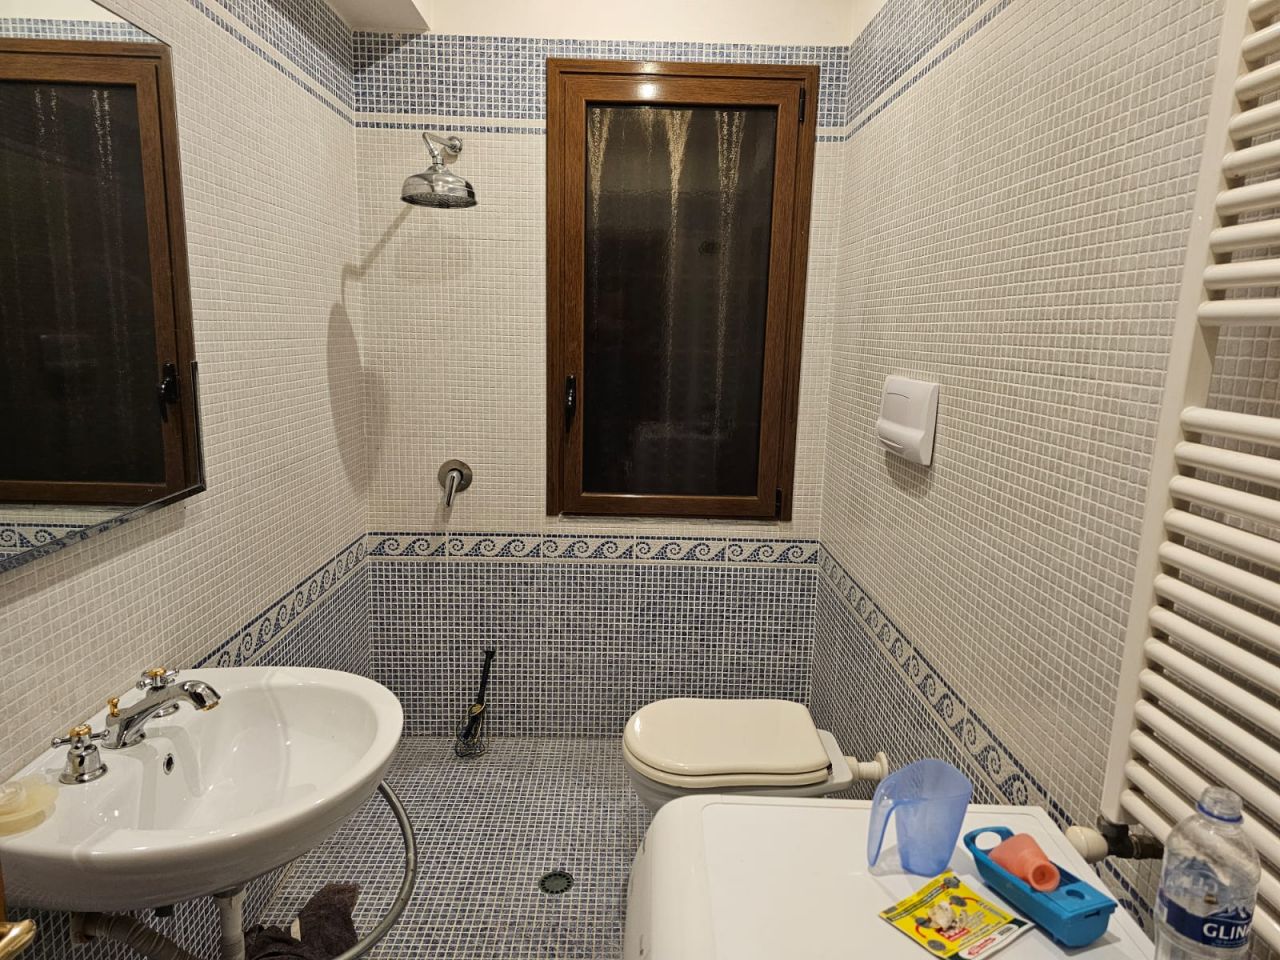 Mieszkanie z dwiema sypialniami na sprzedaż we Wlorze w Albanii